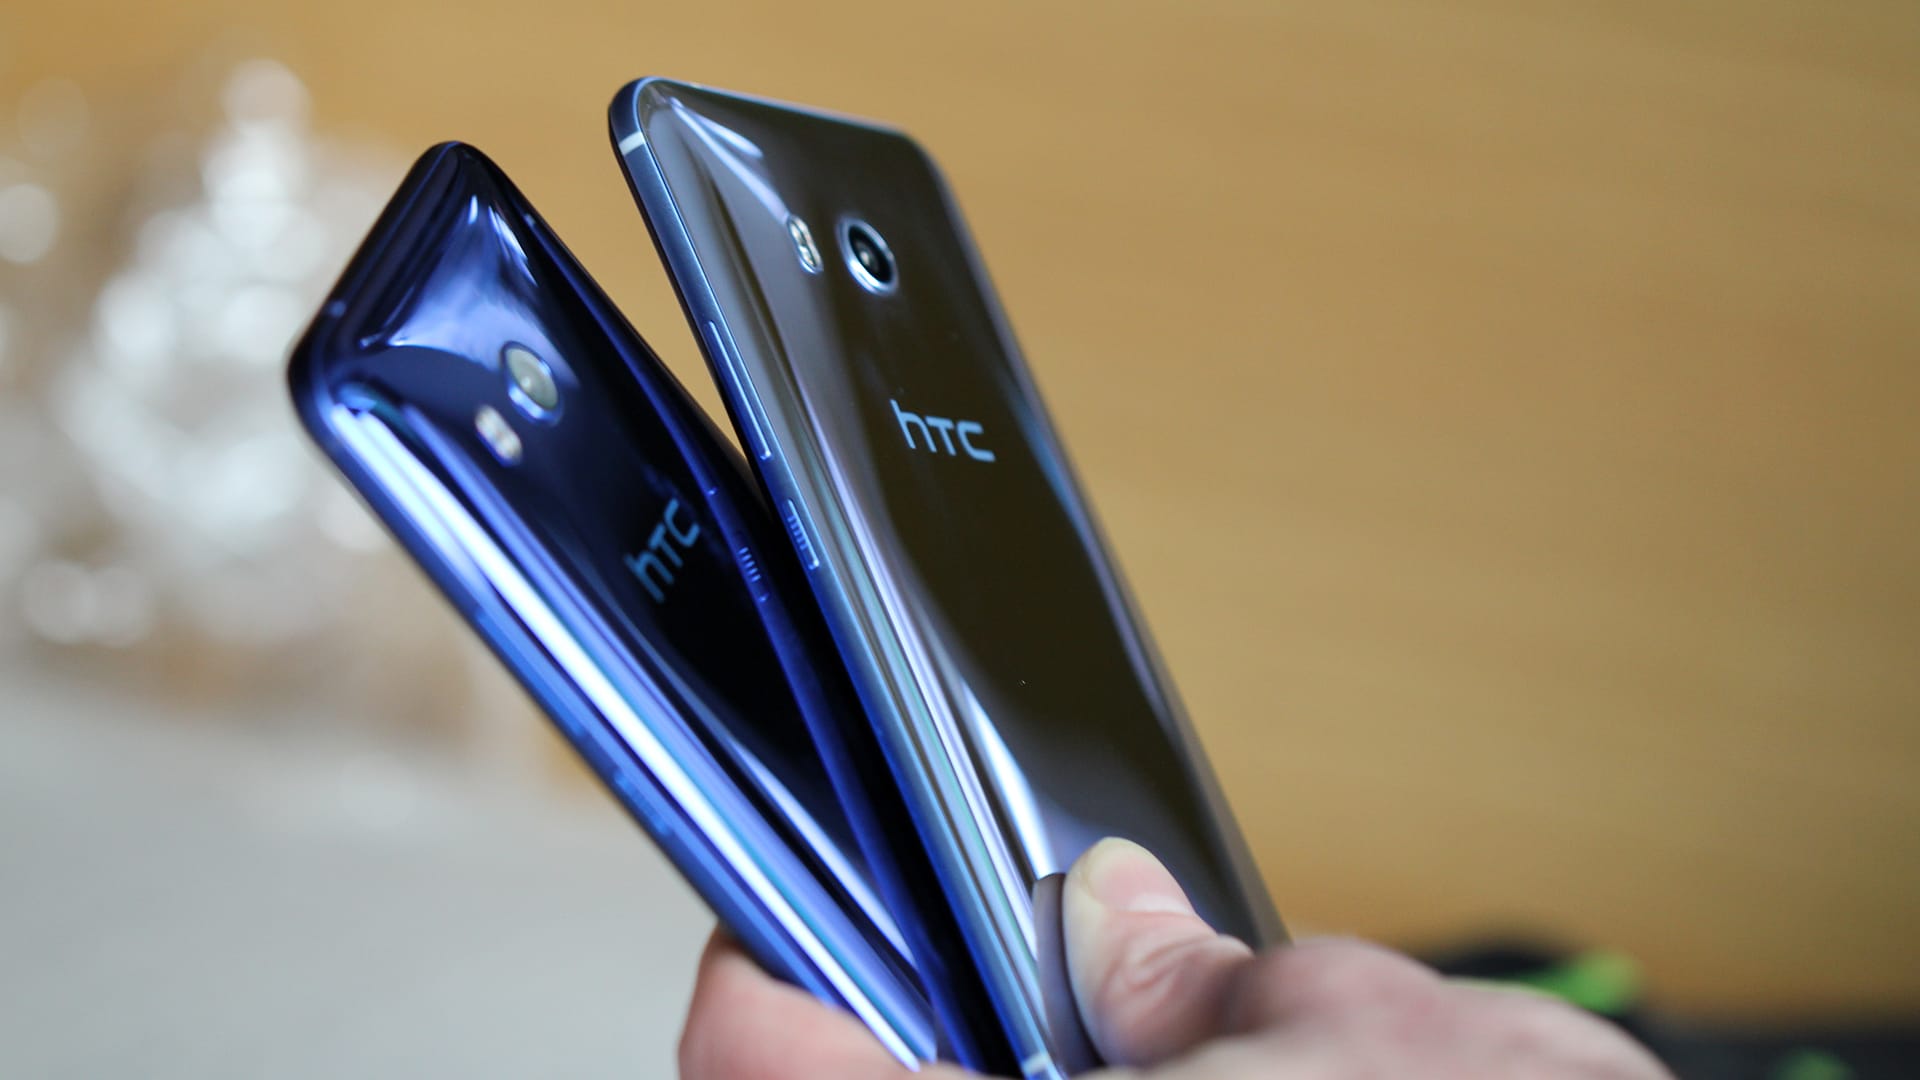 HTC U11 Blau und Silber